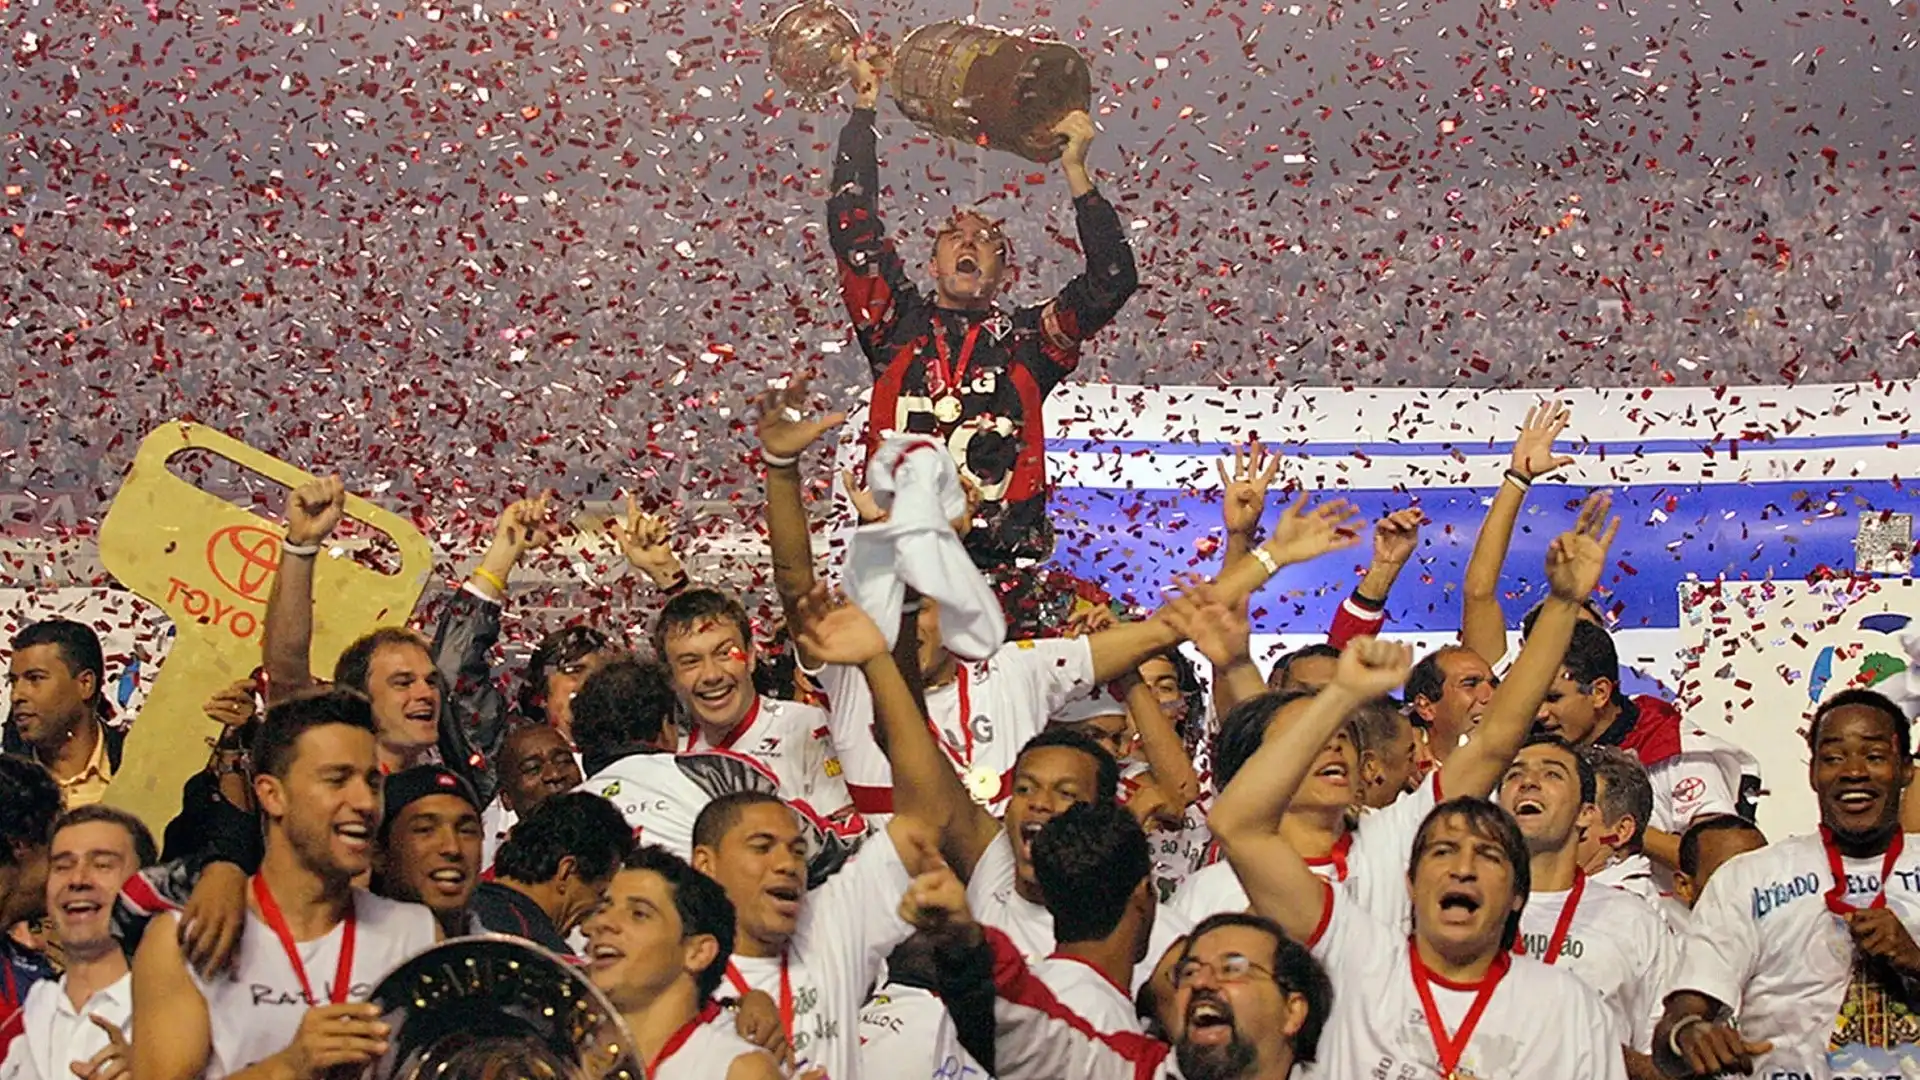 11) San Paolo (Brasile): 12 trofei (3 Coppe Libertadores, 1 Coppa Sudamericana, 1 Coppa Conmenbol, 1 Supercoppa Sudamericana, 2 Recopa Sudamericana, 1 Coppa Master, 1 Coppa del mondo per club, 2 Coppe Intercontinentali)